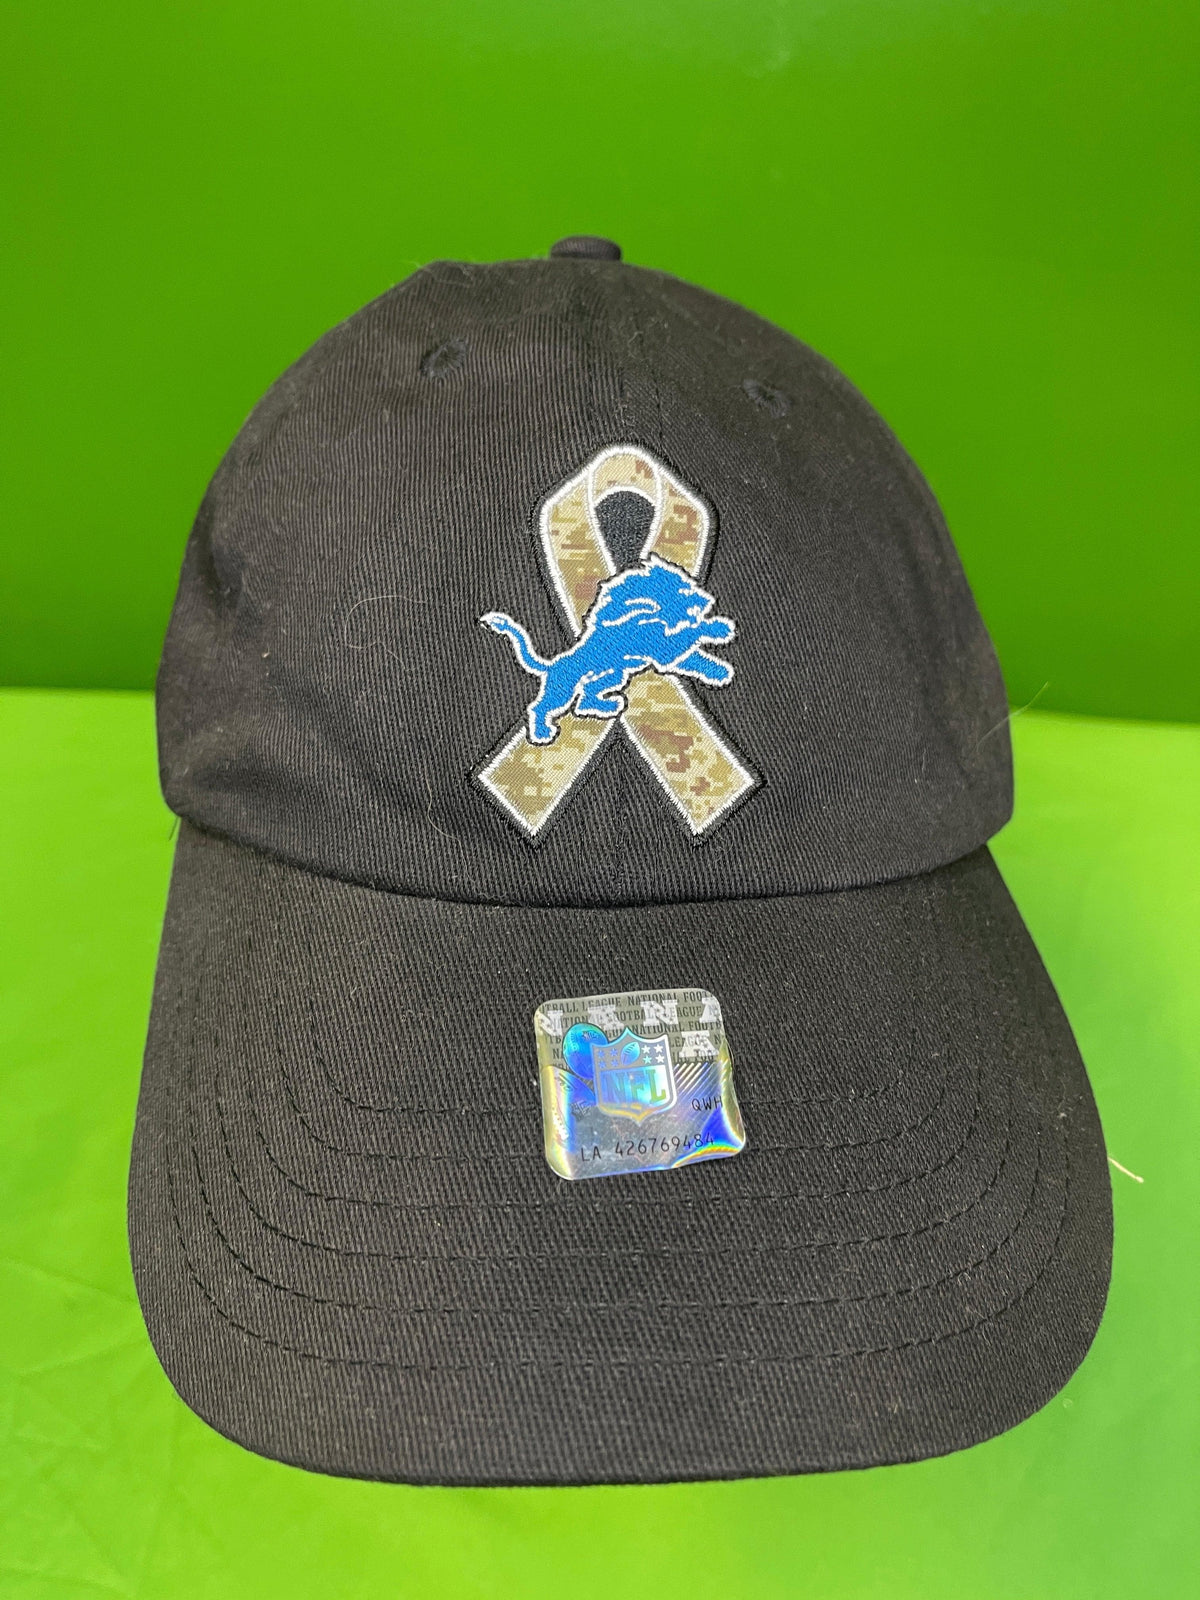 NFL Detroit Lions Black Salute to Service Hat/Cap Snapback OSFM